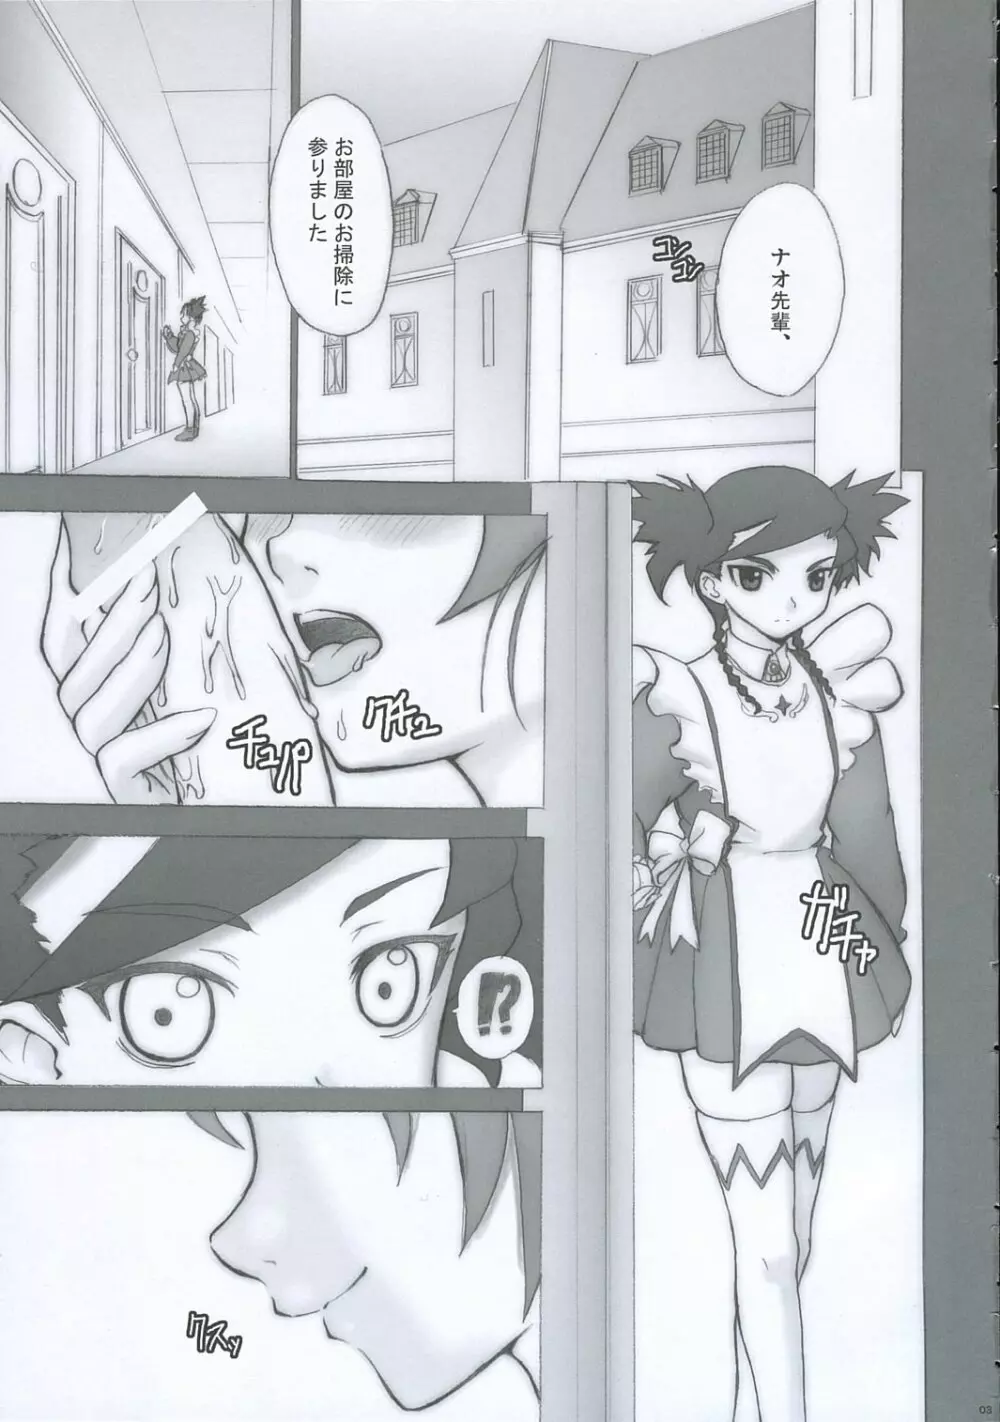 「ニナ、☆☆れる・・・orz」 - page2